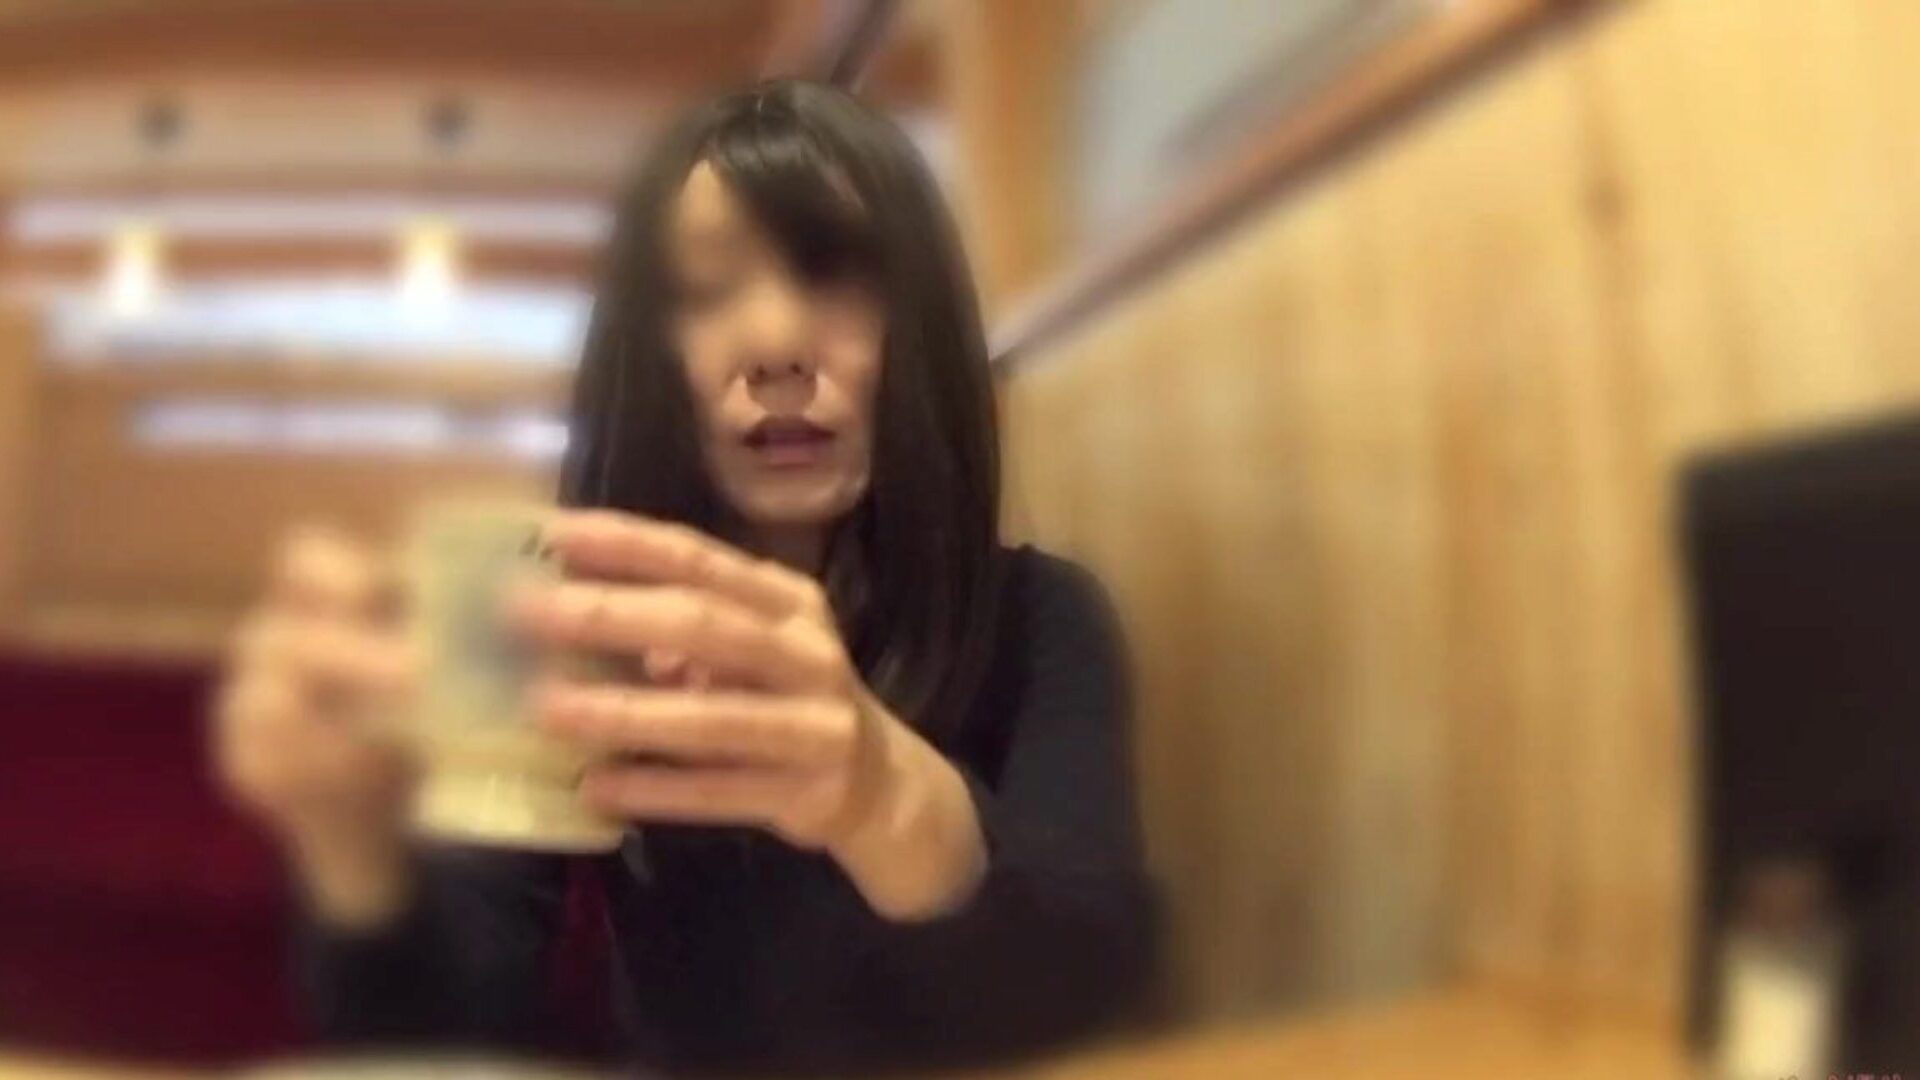 אשתו קרנן הורידה את תחתוניה בבית הקפה: פורנו בחינם 60 צפה אשתו של קרנן הורידה את תחתוניה בבית הקפה וידיאו ב- xhamster - הלהקה האולטימטיבית של יפני אסיה בחינם קטעי וידאו פורנו hd גונזו